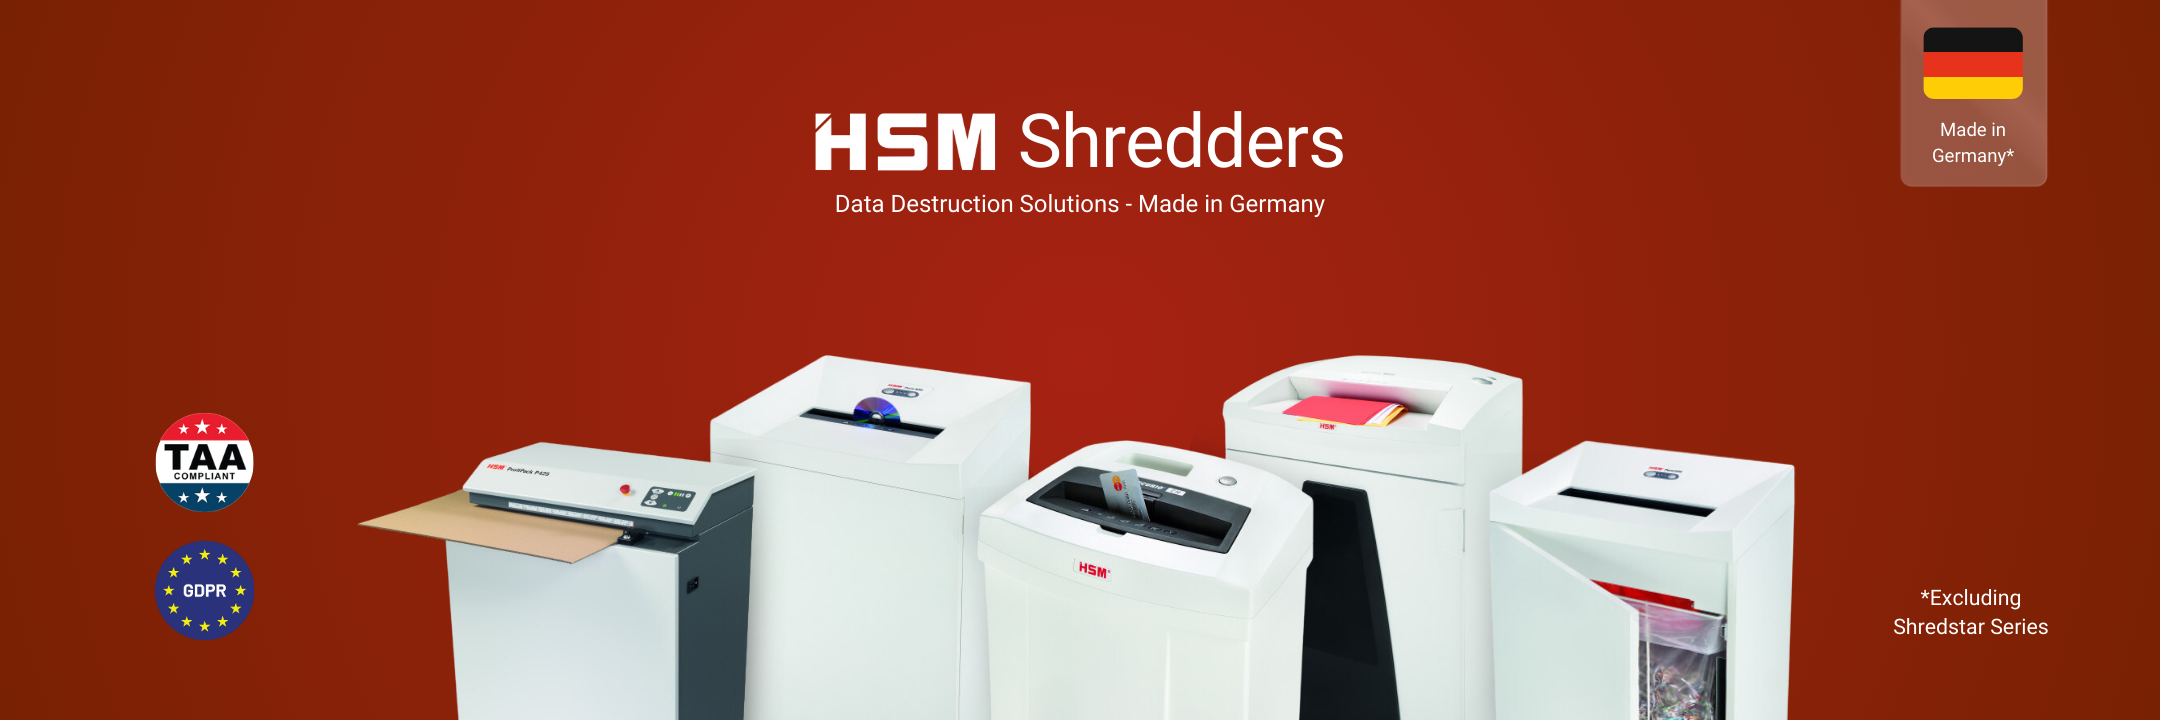 HSM-Shredders-Main-Banner-USA-3